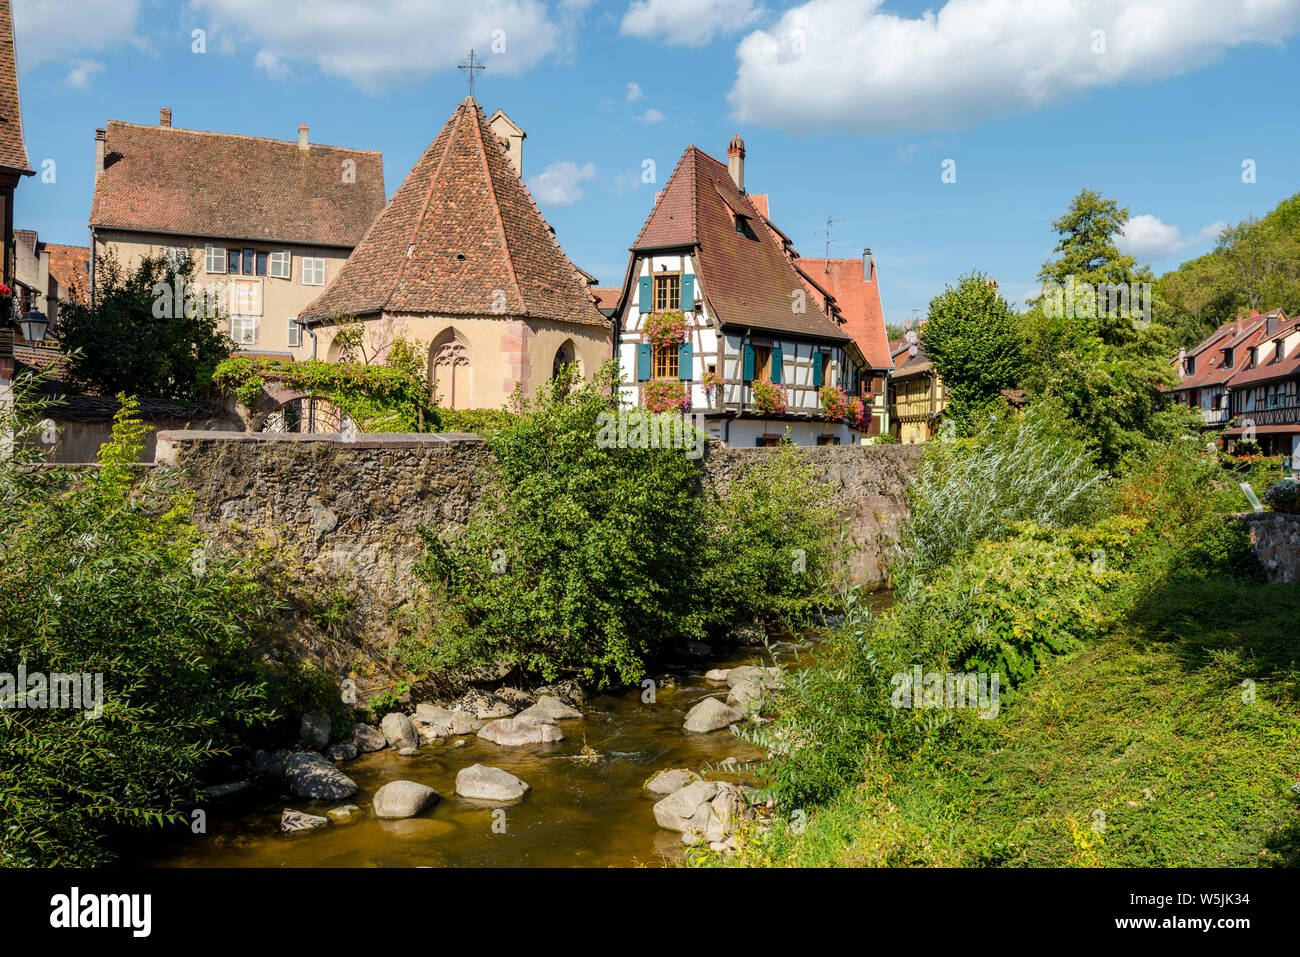 Chapelle de l'Oberhof en el centro de la aldea medieval de Kaysersberg, La Ruta del Vino de Alsacia, Francia, antiguas casas con entramados de madera en el riachuelo Foto de stock